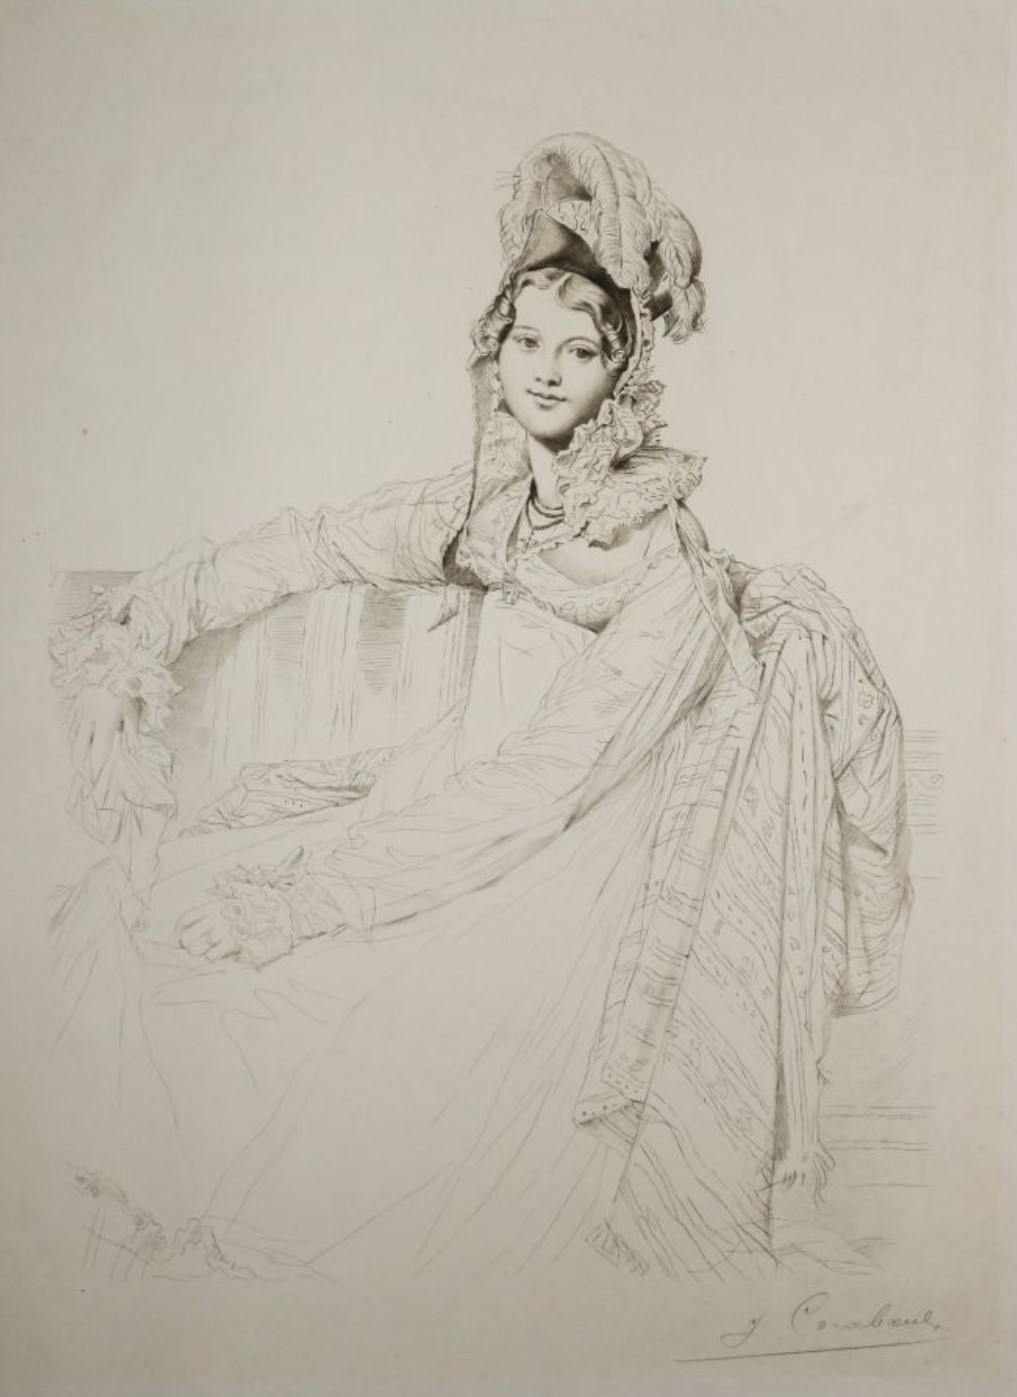 Jean-Auguste-Dominique Ingres: Portrait of Madam Louis-Nicholas-Marie Destouches (1816). Graphite on paper, 17” x 11 1/4”.